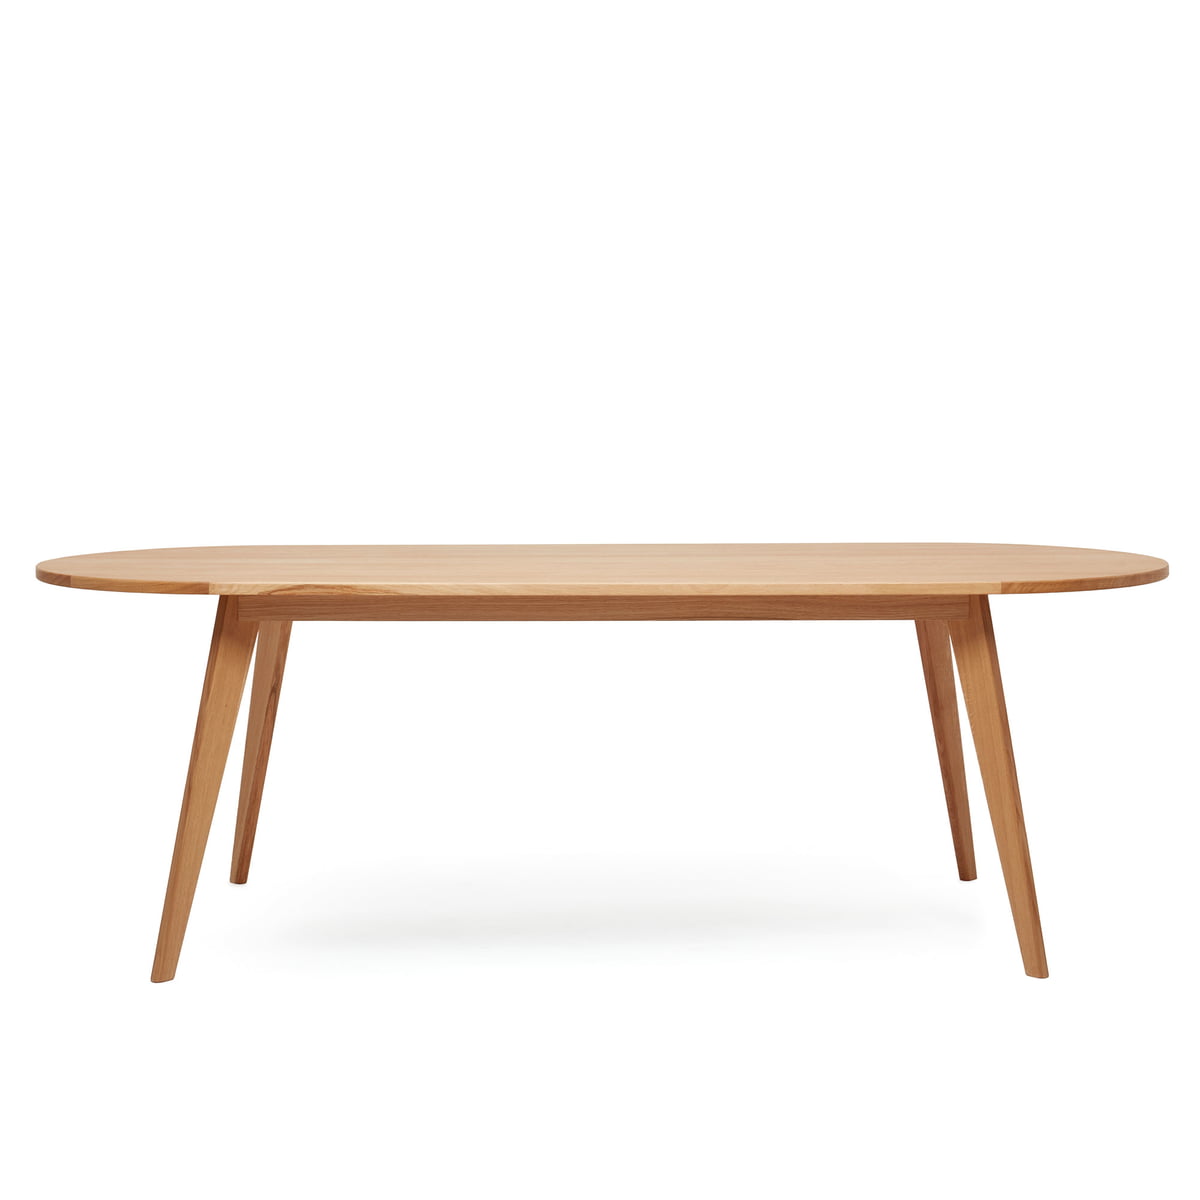 Puik - Archi Table de salle à manger, ovale, 160 x 89 cm, chêne naturel